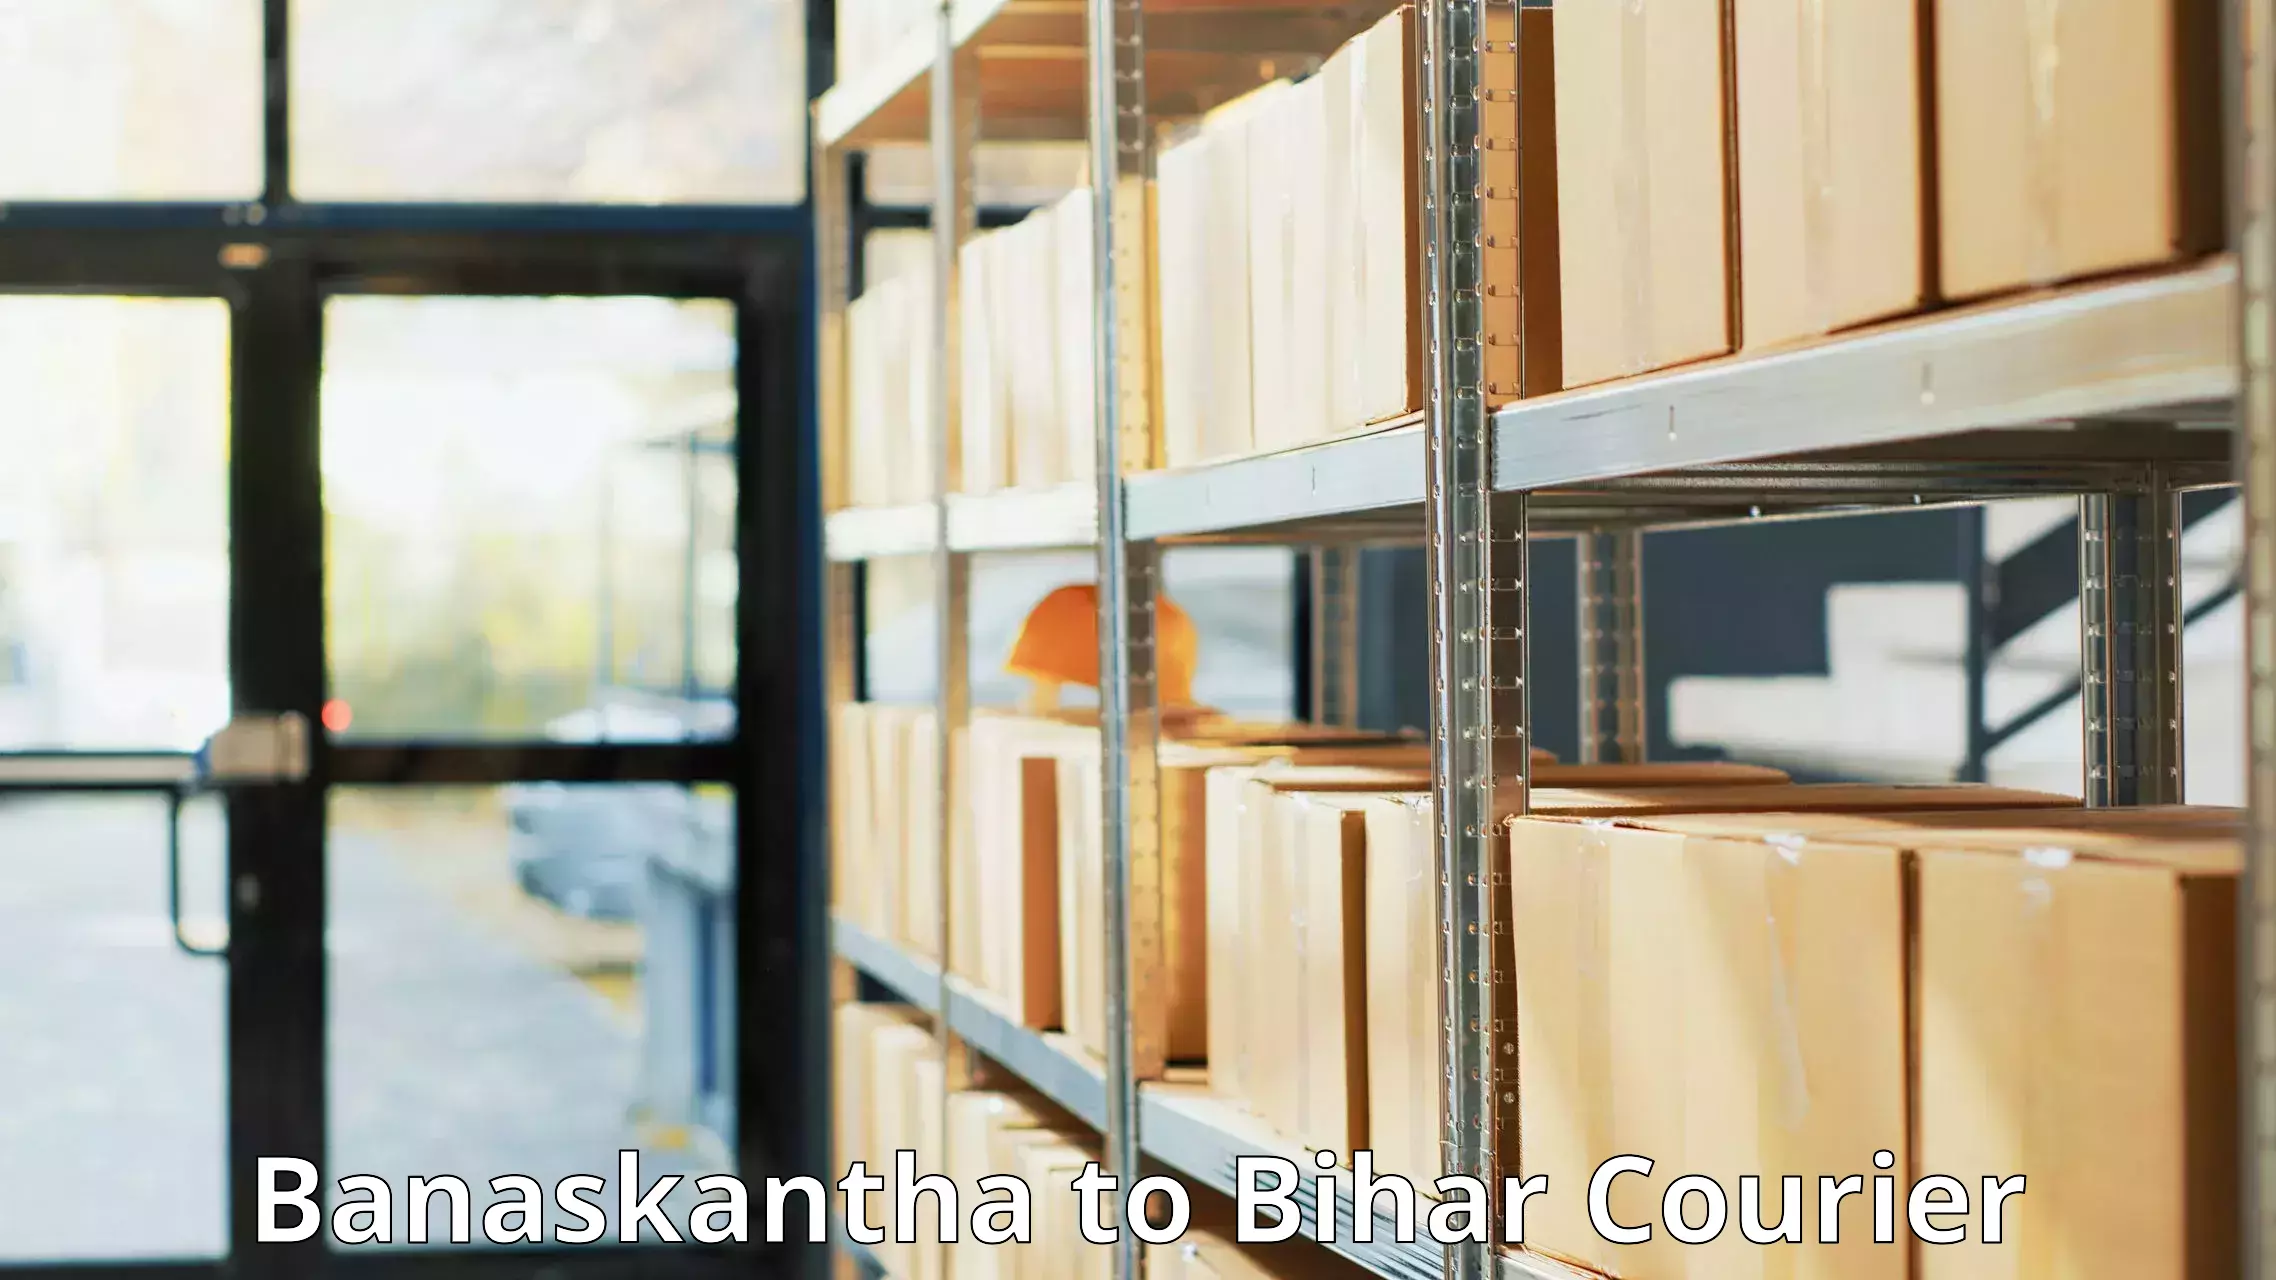 Bulk shipping discounts Banaskantha to Bihar